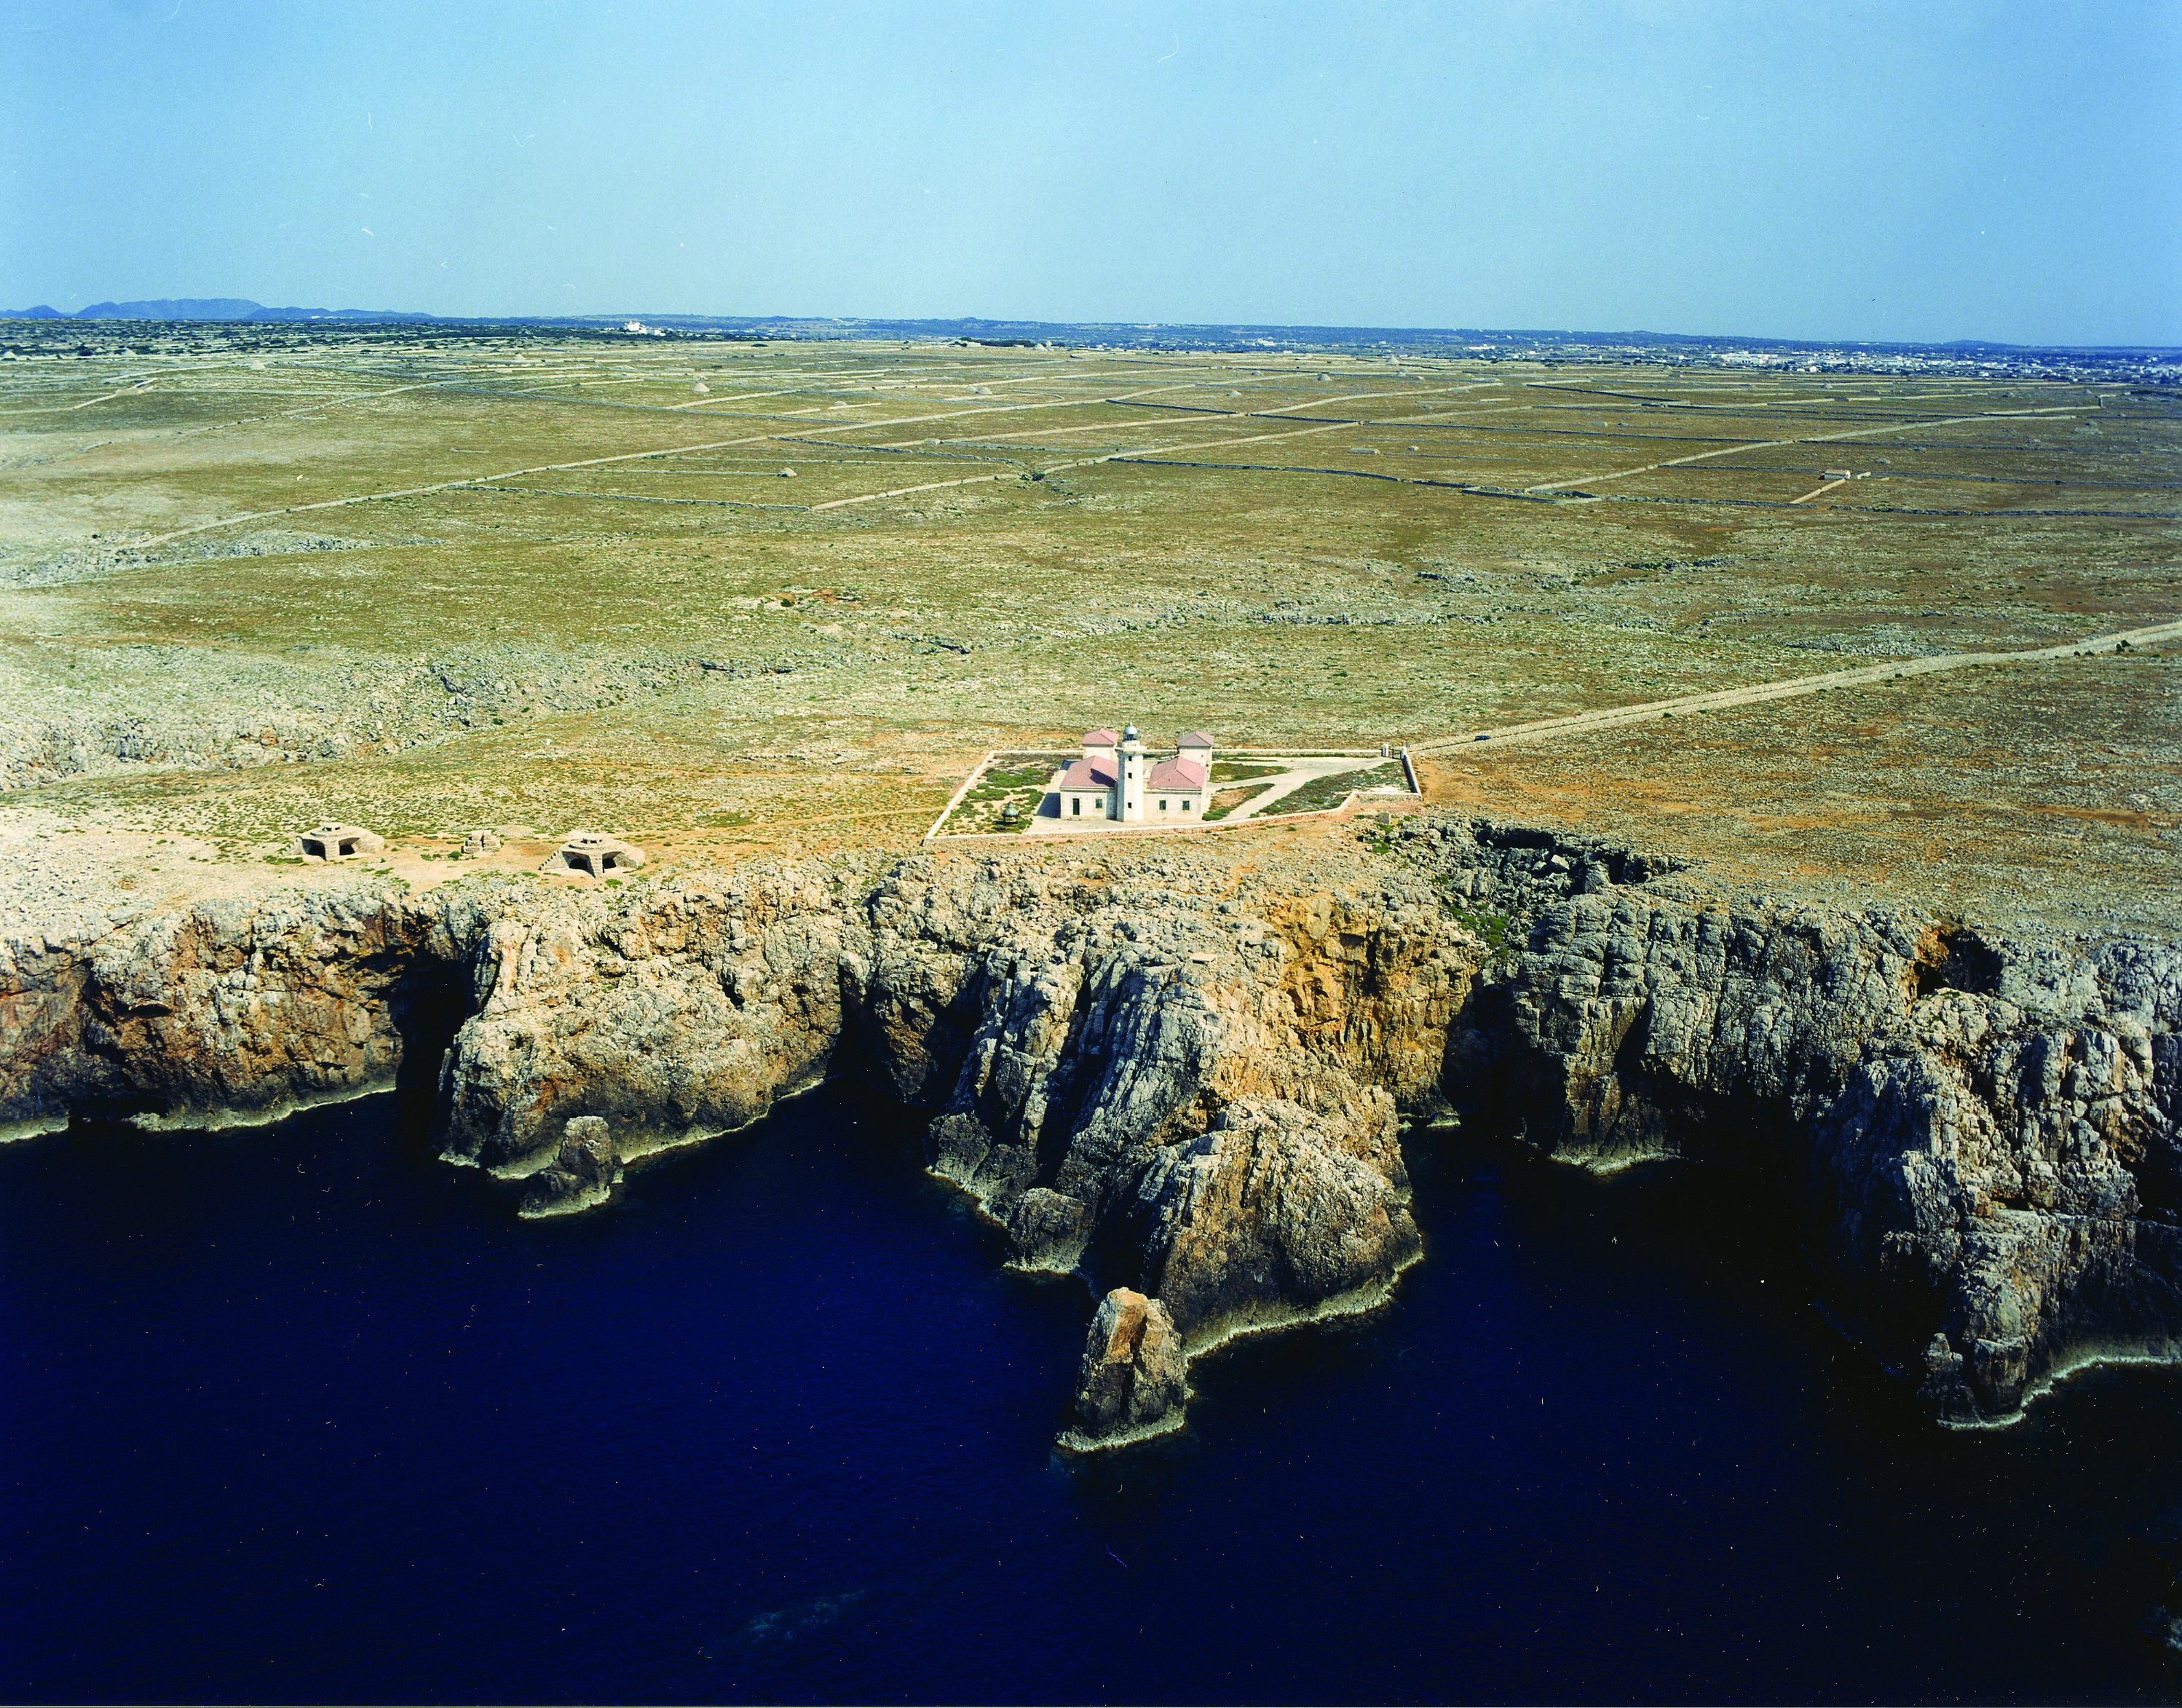 17 Menorca - Punta Nati